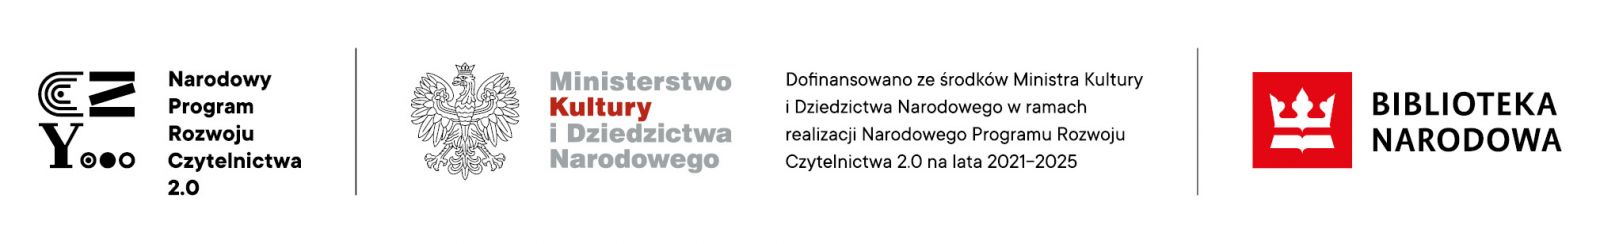 Stopka z logotypami Narodowego Programu Rozwoju Czytelnictwa, Ministerstwa Kultury i Dziedzictwa Narodowego oraz Biblioteki Narodowej. Dofinansowano ze środków Ministra Kultury i Dziedzictwa Narodowego w ramach realizacji Narodowego Programu Rozwoju Czytelnictwa 2.0 na lata 2021-2025